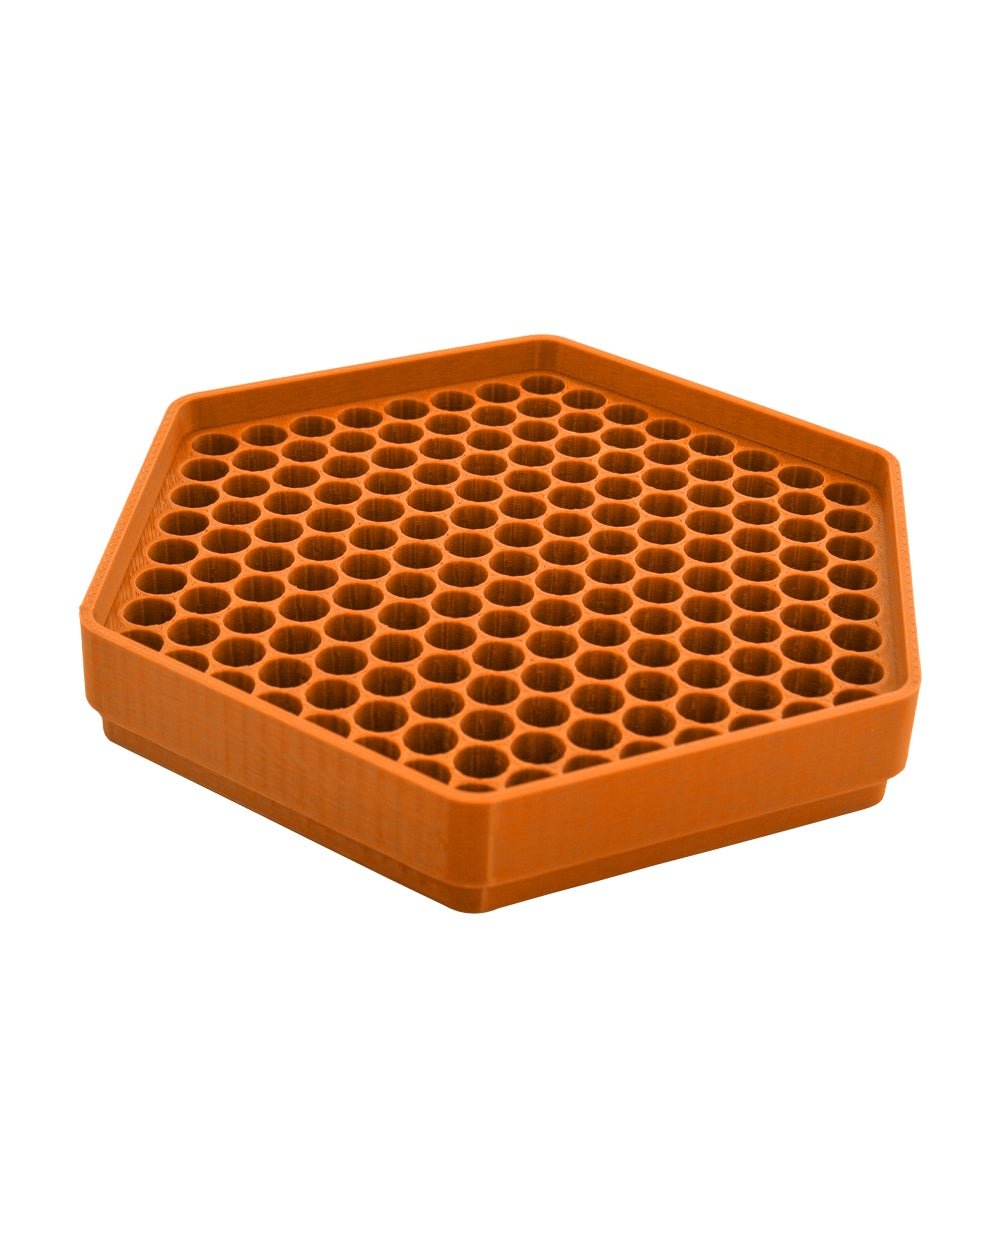 KING KONE | Orange Vibration Pre-Rolled Cones Filling Machine 84/98/109mm | Fill 169 Cones Per Run - 3